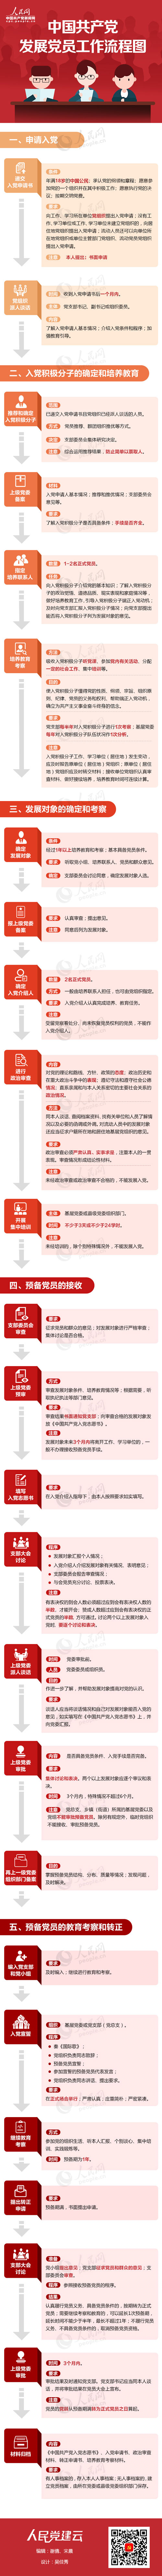 中国共产党发展党员工作流程图